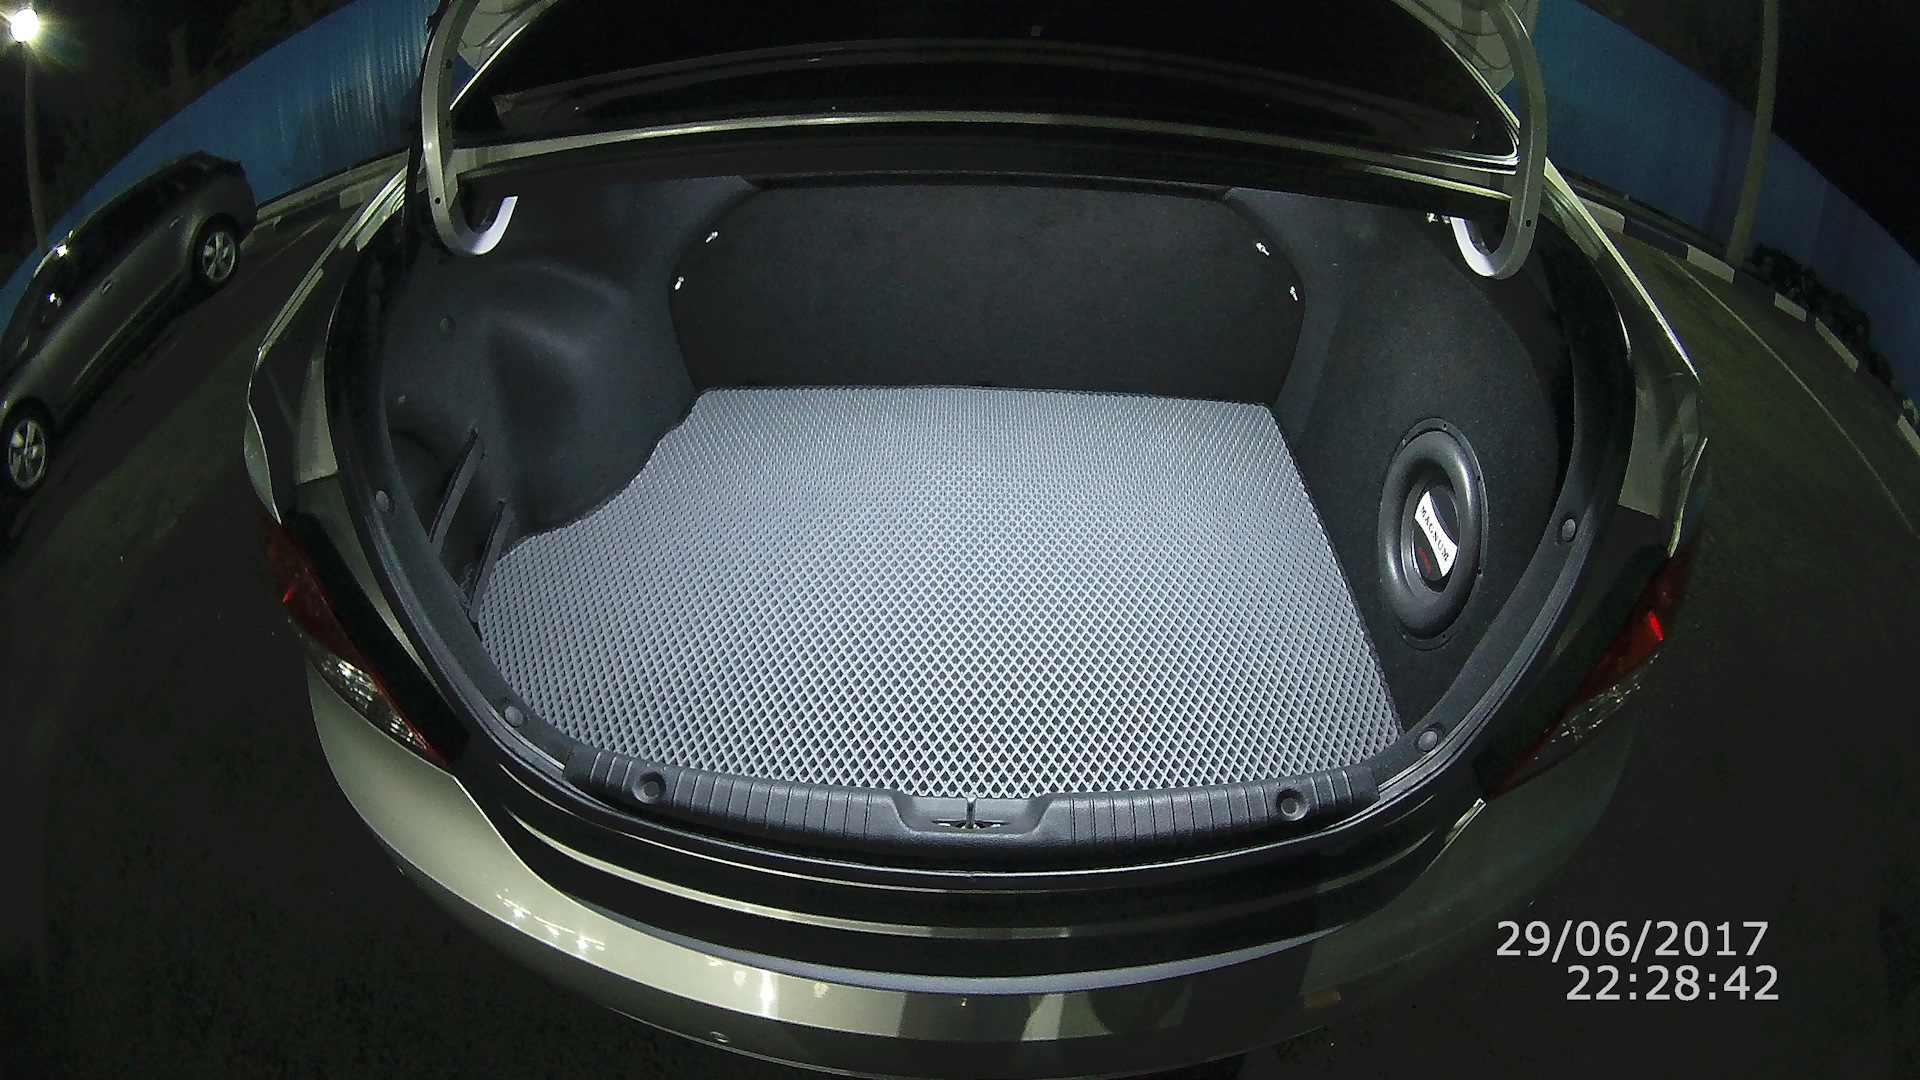 Обшивка багажника солярис. Hyundai Solaris 2012 седан стелс в багажник. Hyundai Solaris 2012 саб в багажник. Коврик багажника Солярис 2012 седан. ЭВА коврик в багажник Солярис 1 седан.